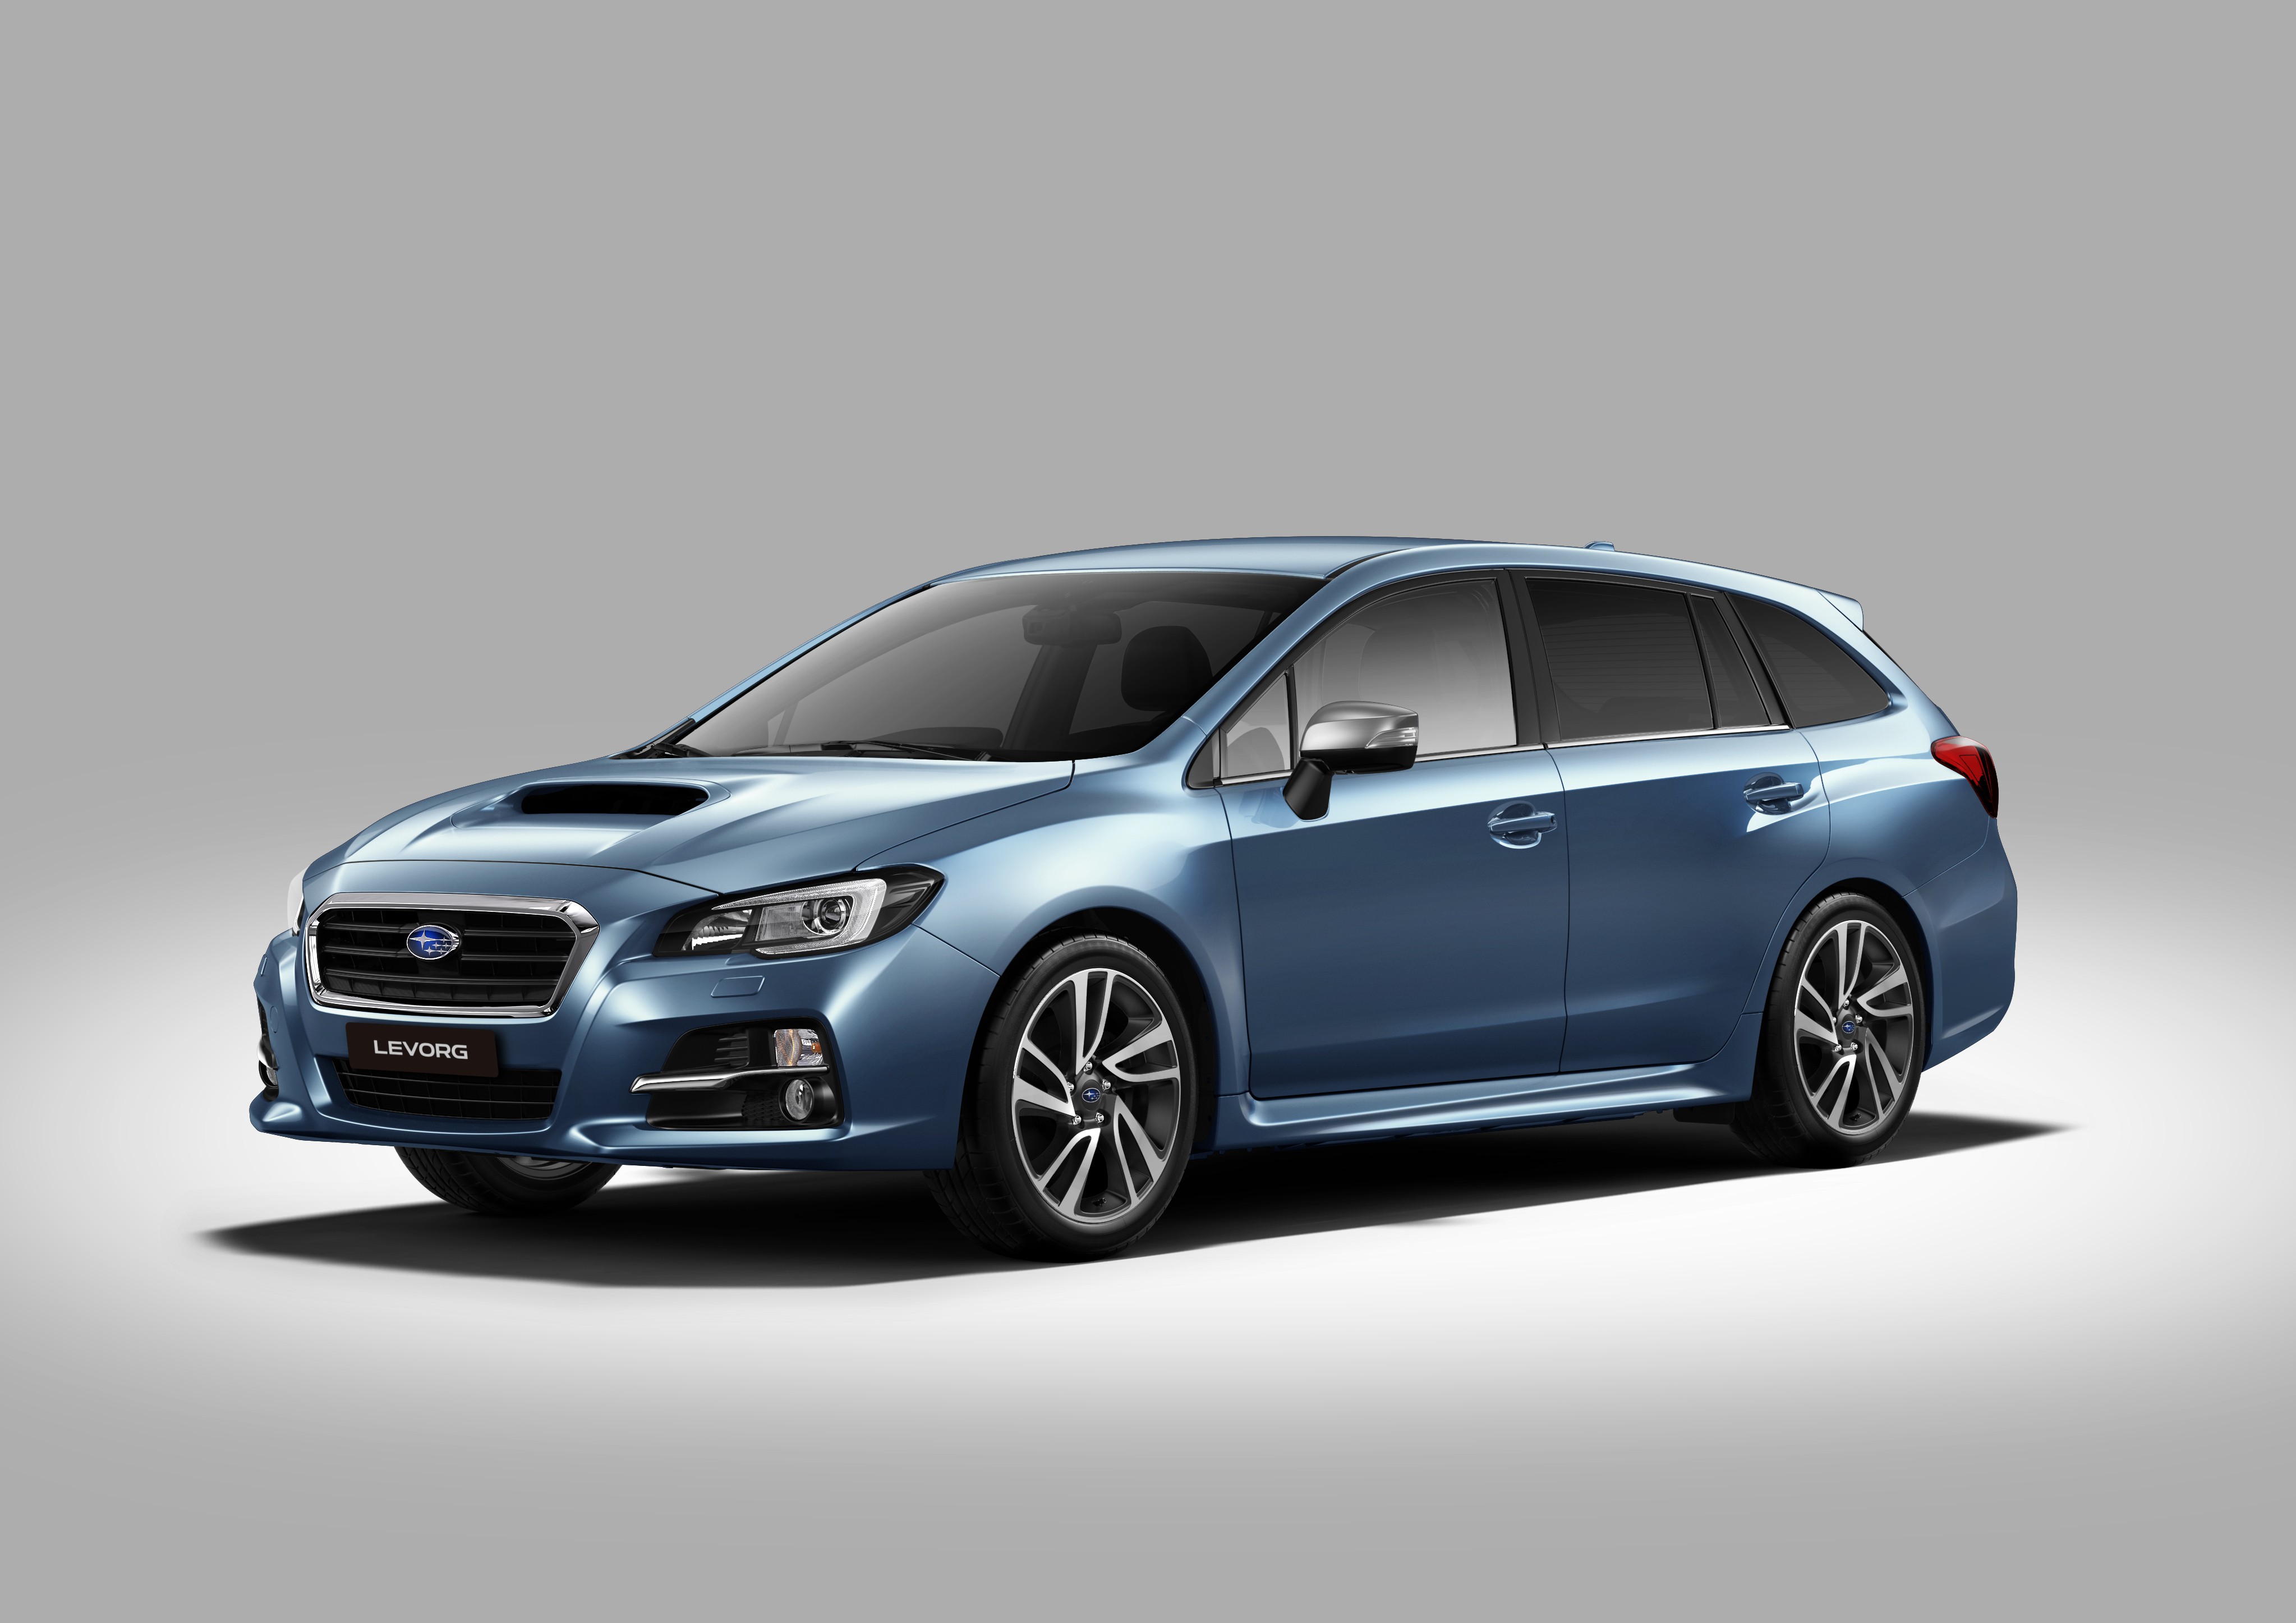 Los nuevos Outback, Levorg y Forester Diésel son las propuestas de Subaru para el Salón de Ginebra 2015